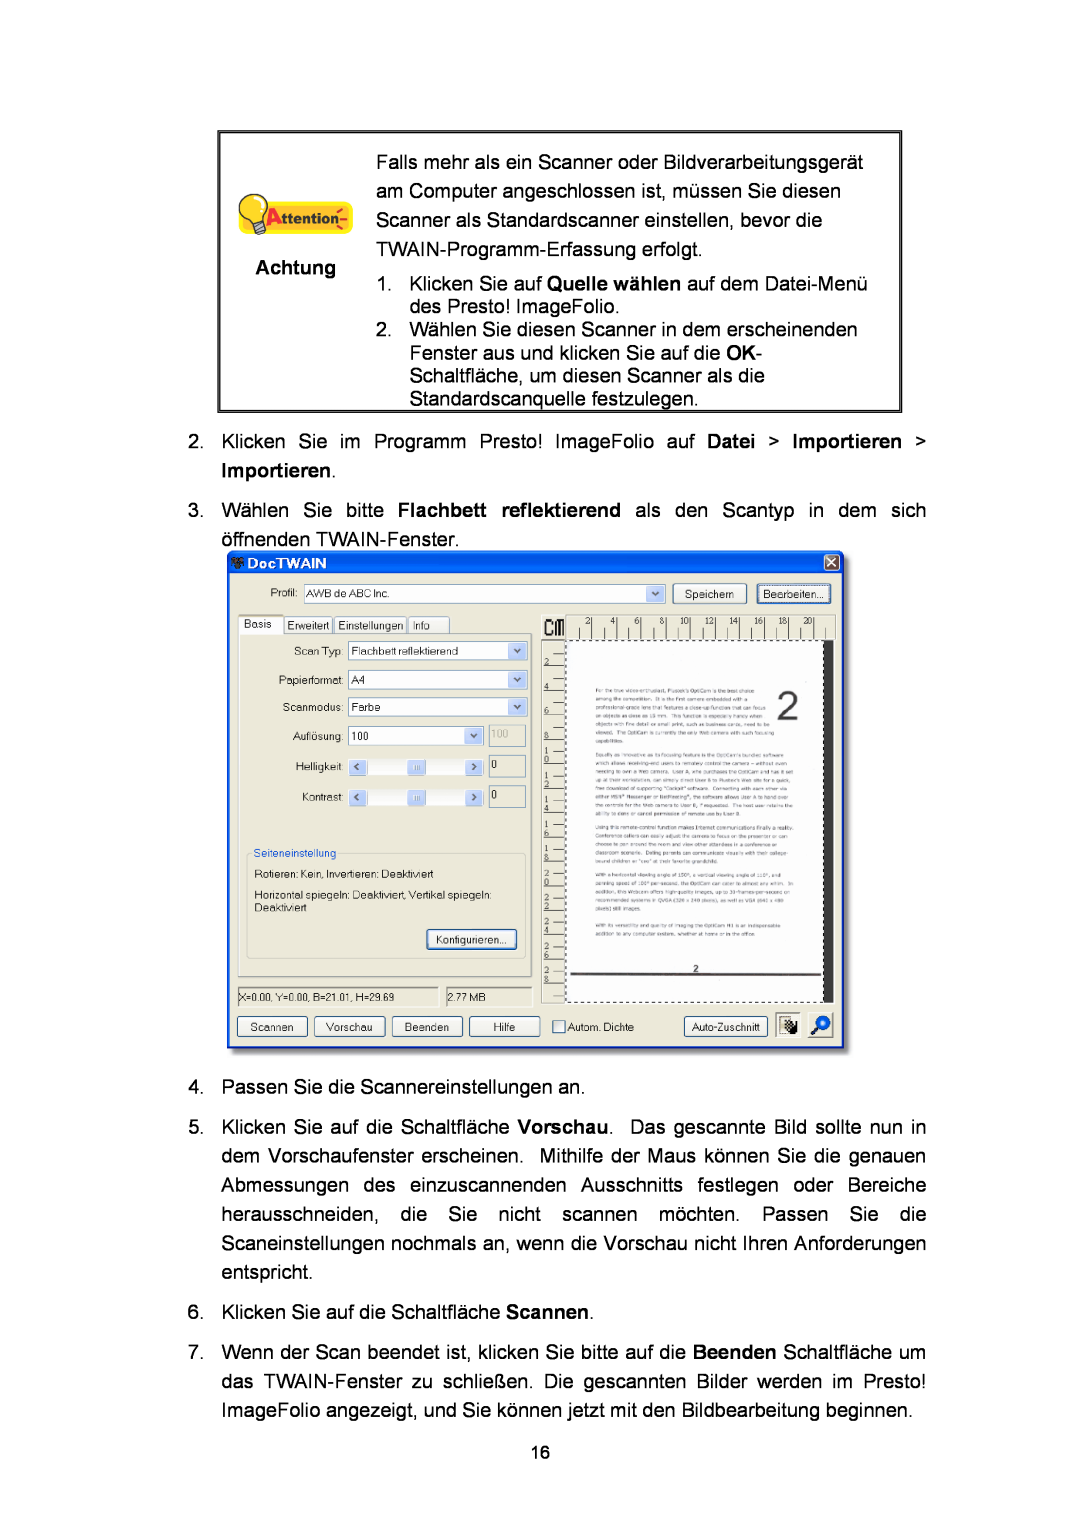 Plustek A360, Scanner-Benutzerhandbuch manual Achtung, Passen Sie die Scannereinstellungen an 